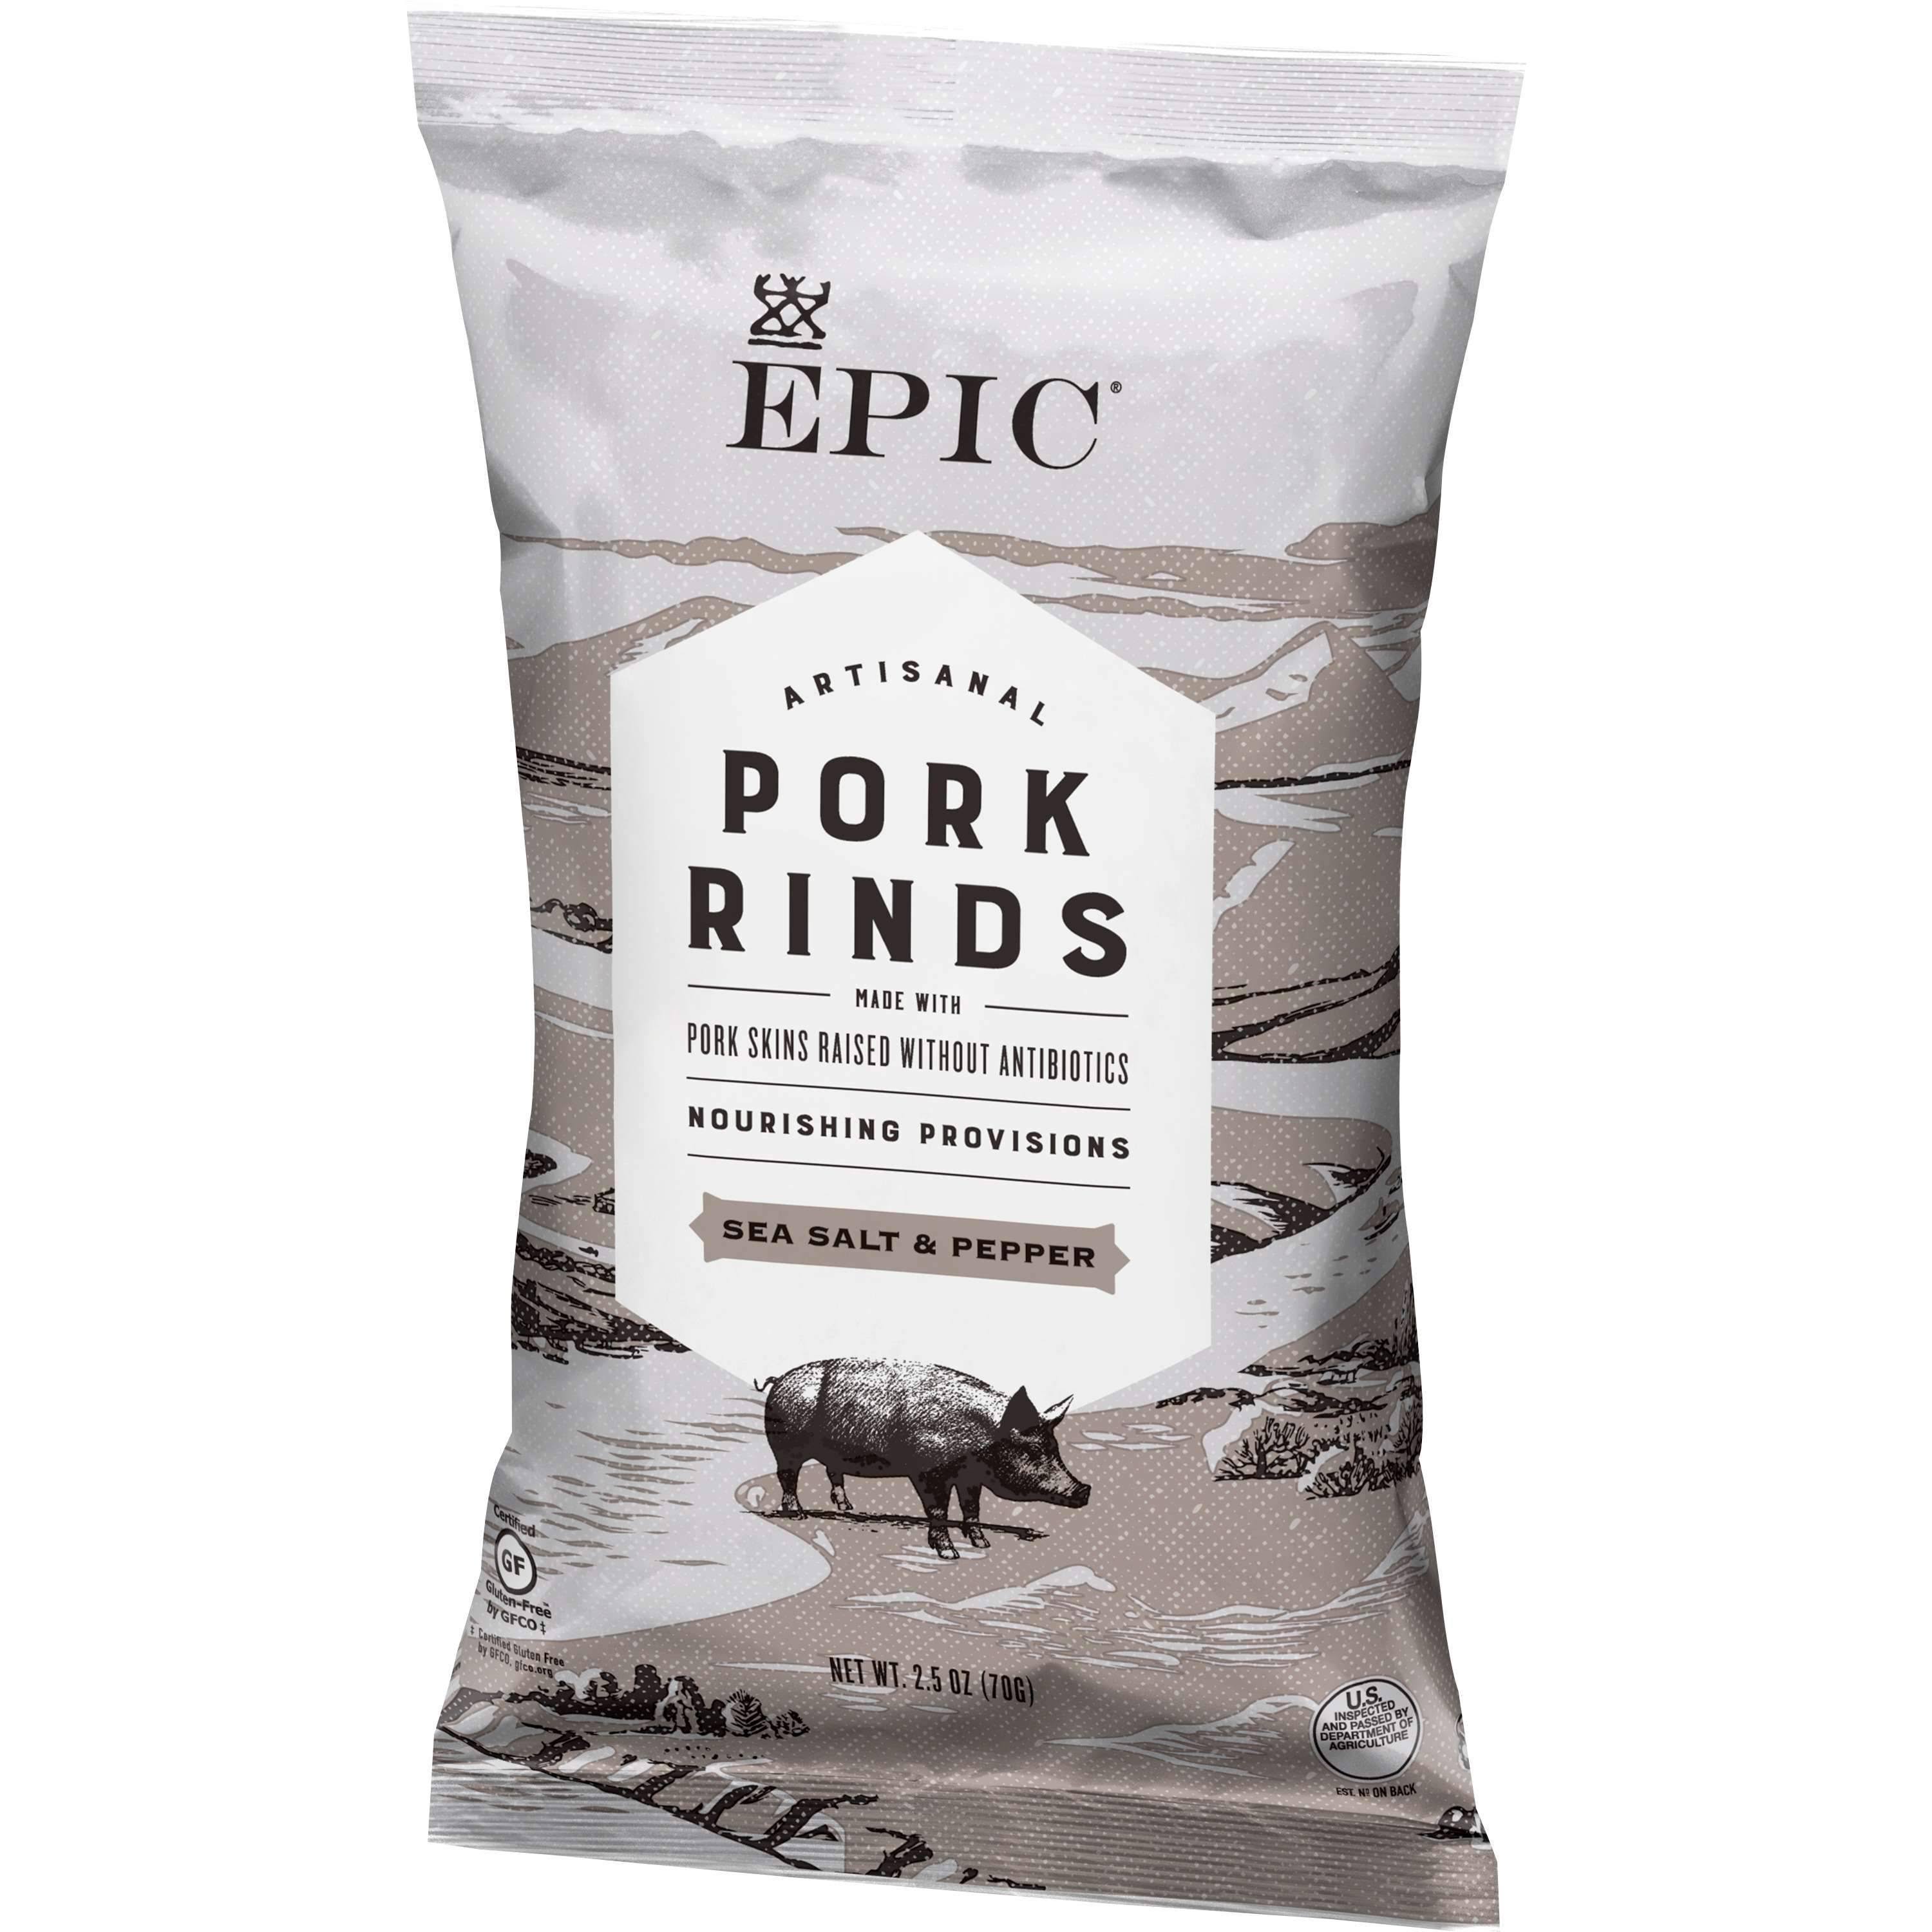 Epic Artisanal Pork Rinds, Sea Salt & Pepper, 2.5 oz